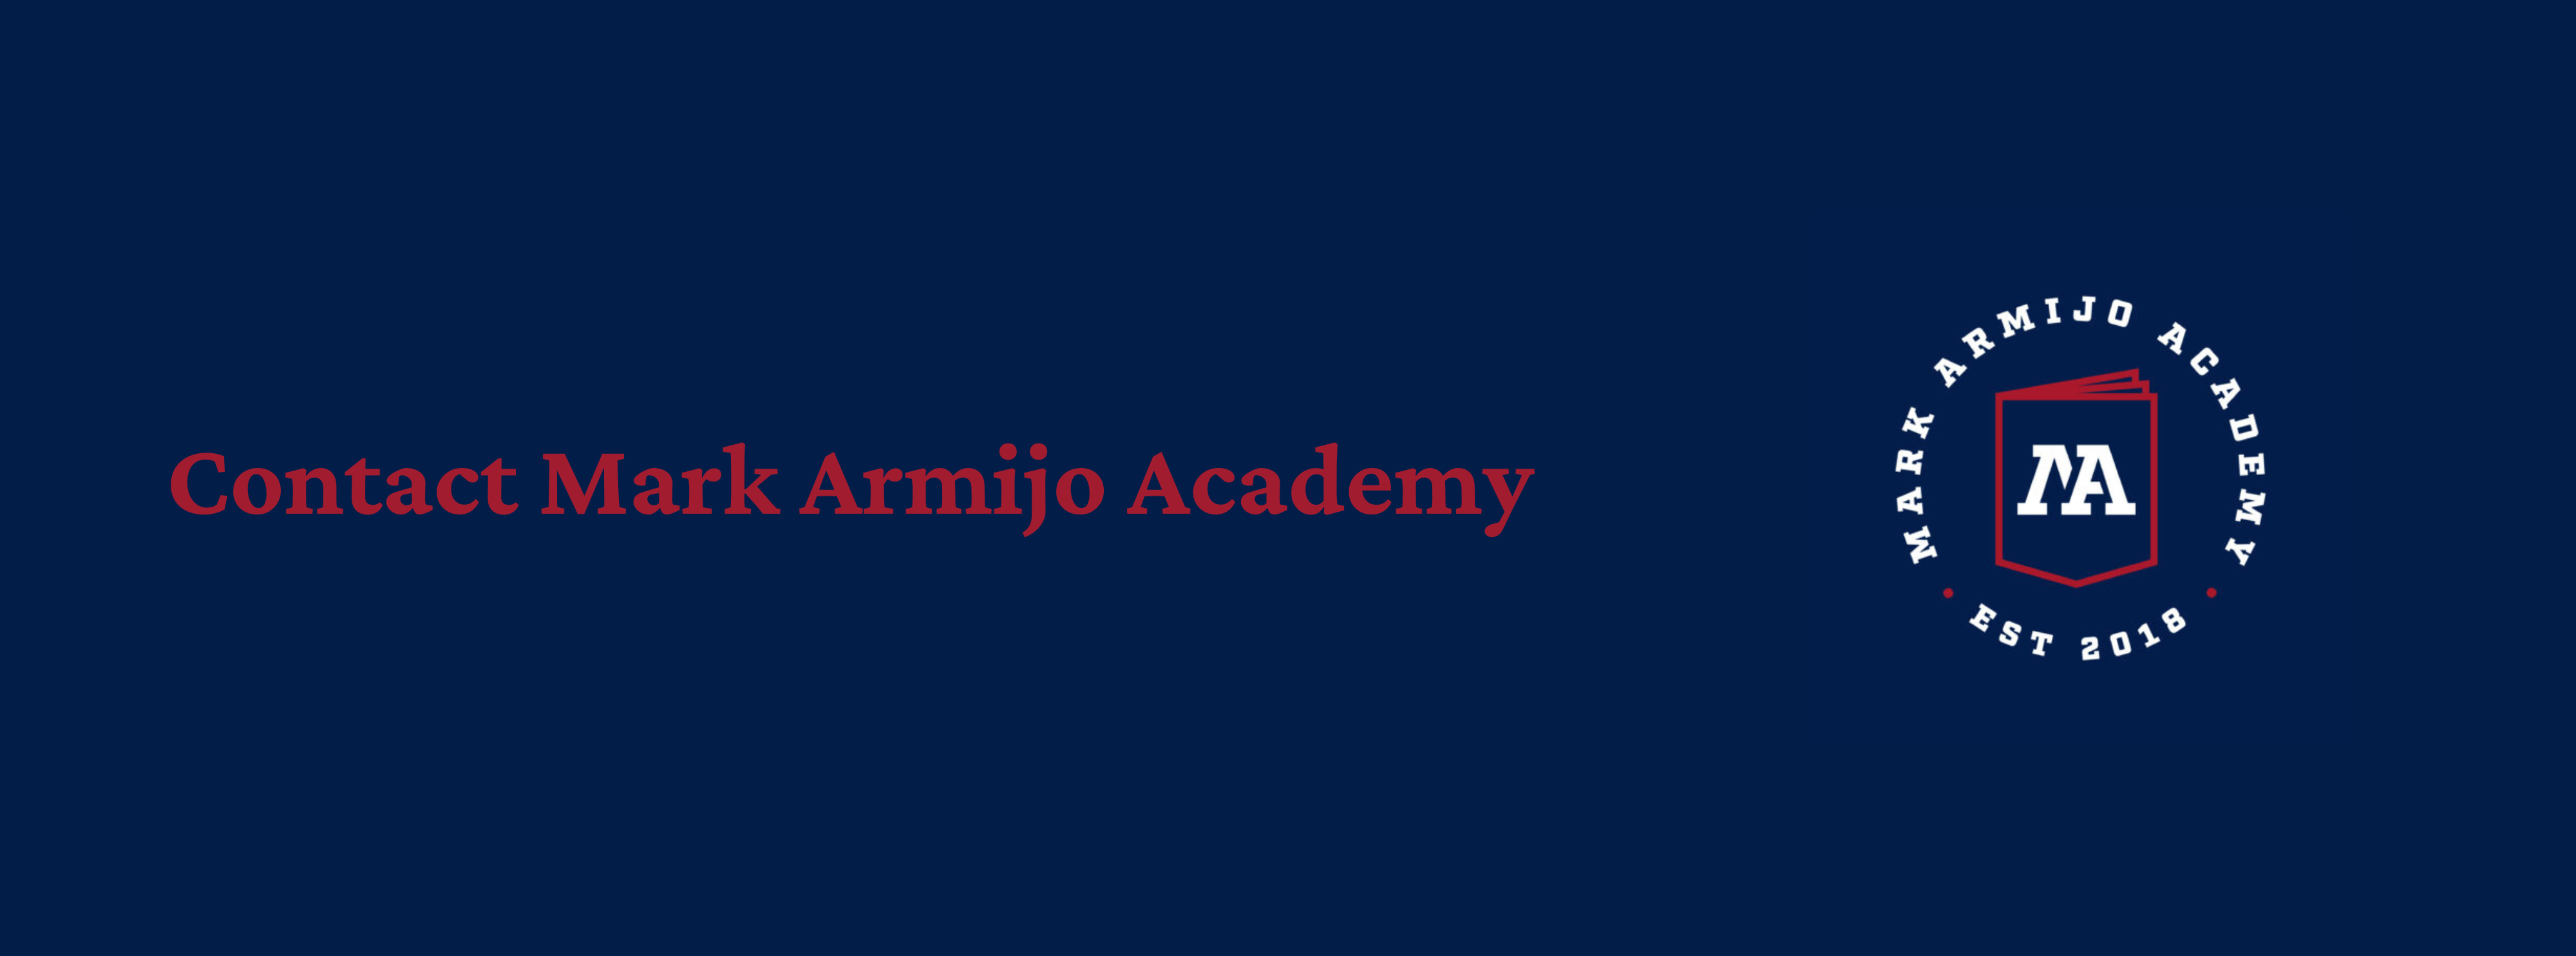 Website Banner "Contact Mark Armijo Academy""